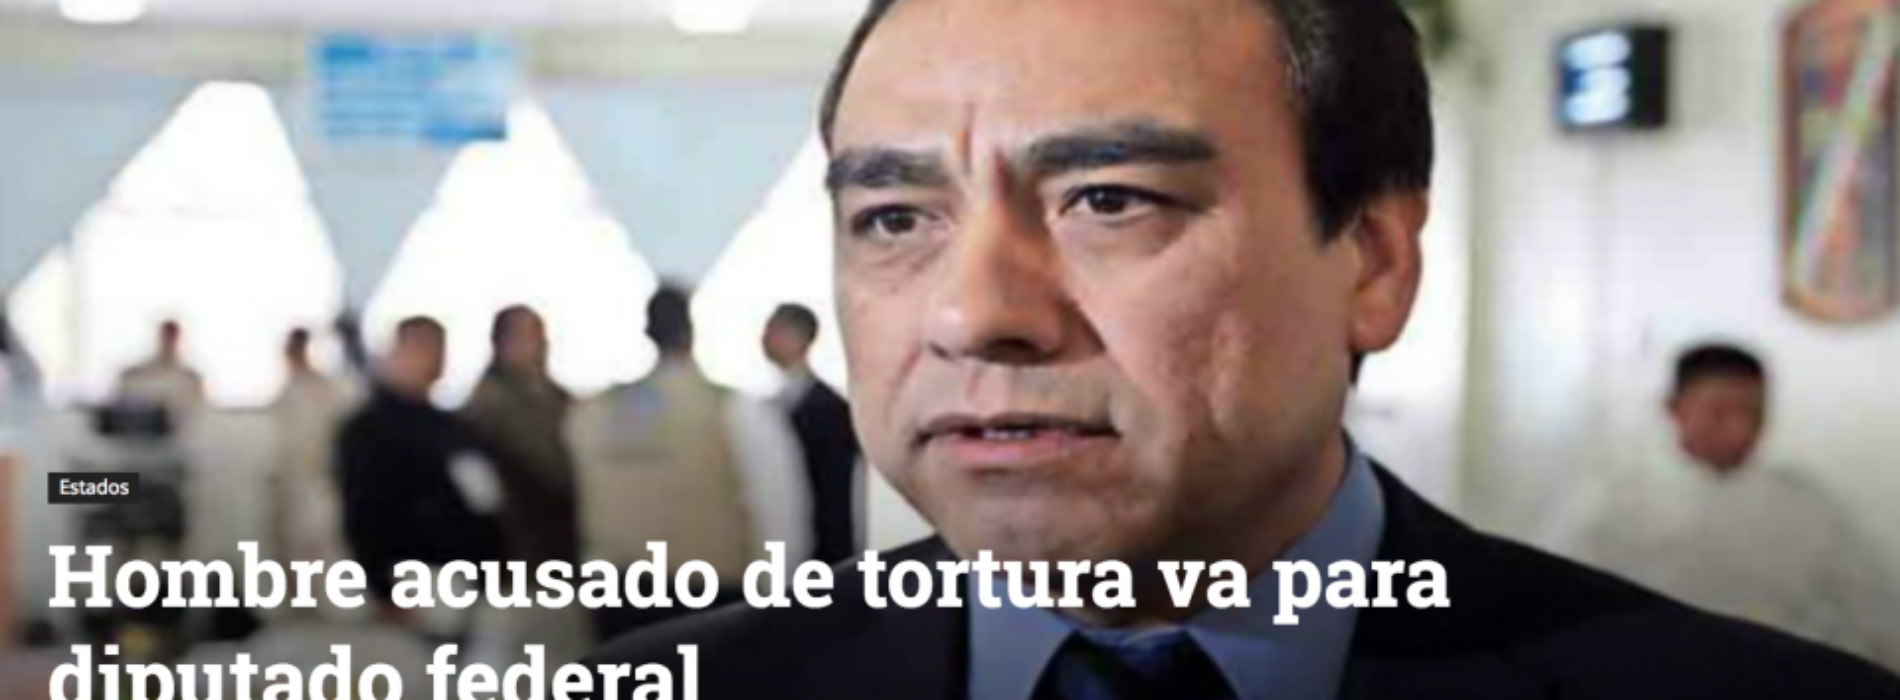 Verificado.mx: #EstoSíPasó, candidato plurinominal de Baja
California enfrenta proceso de inhabilitación por tortura